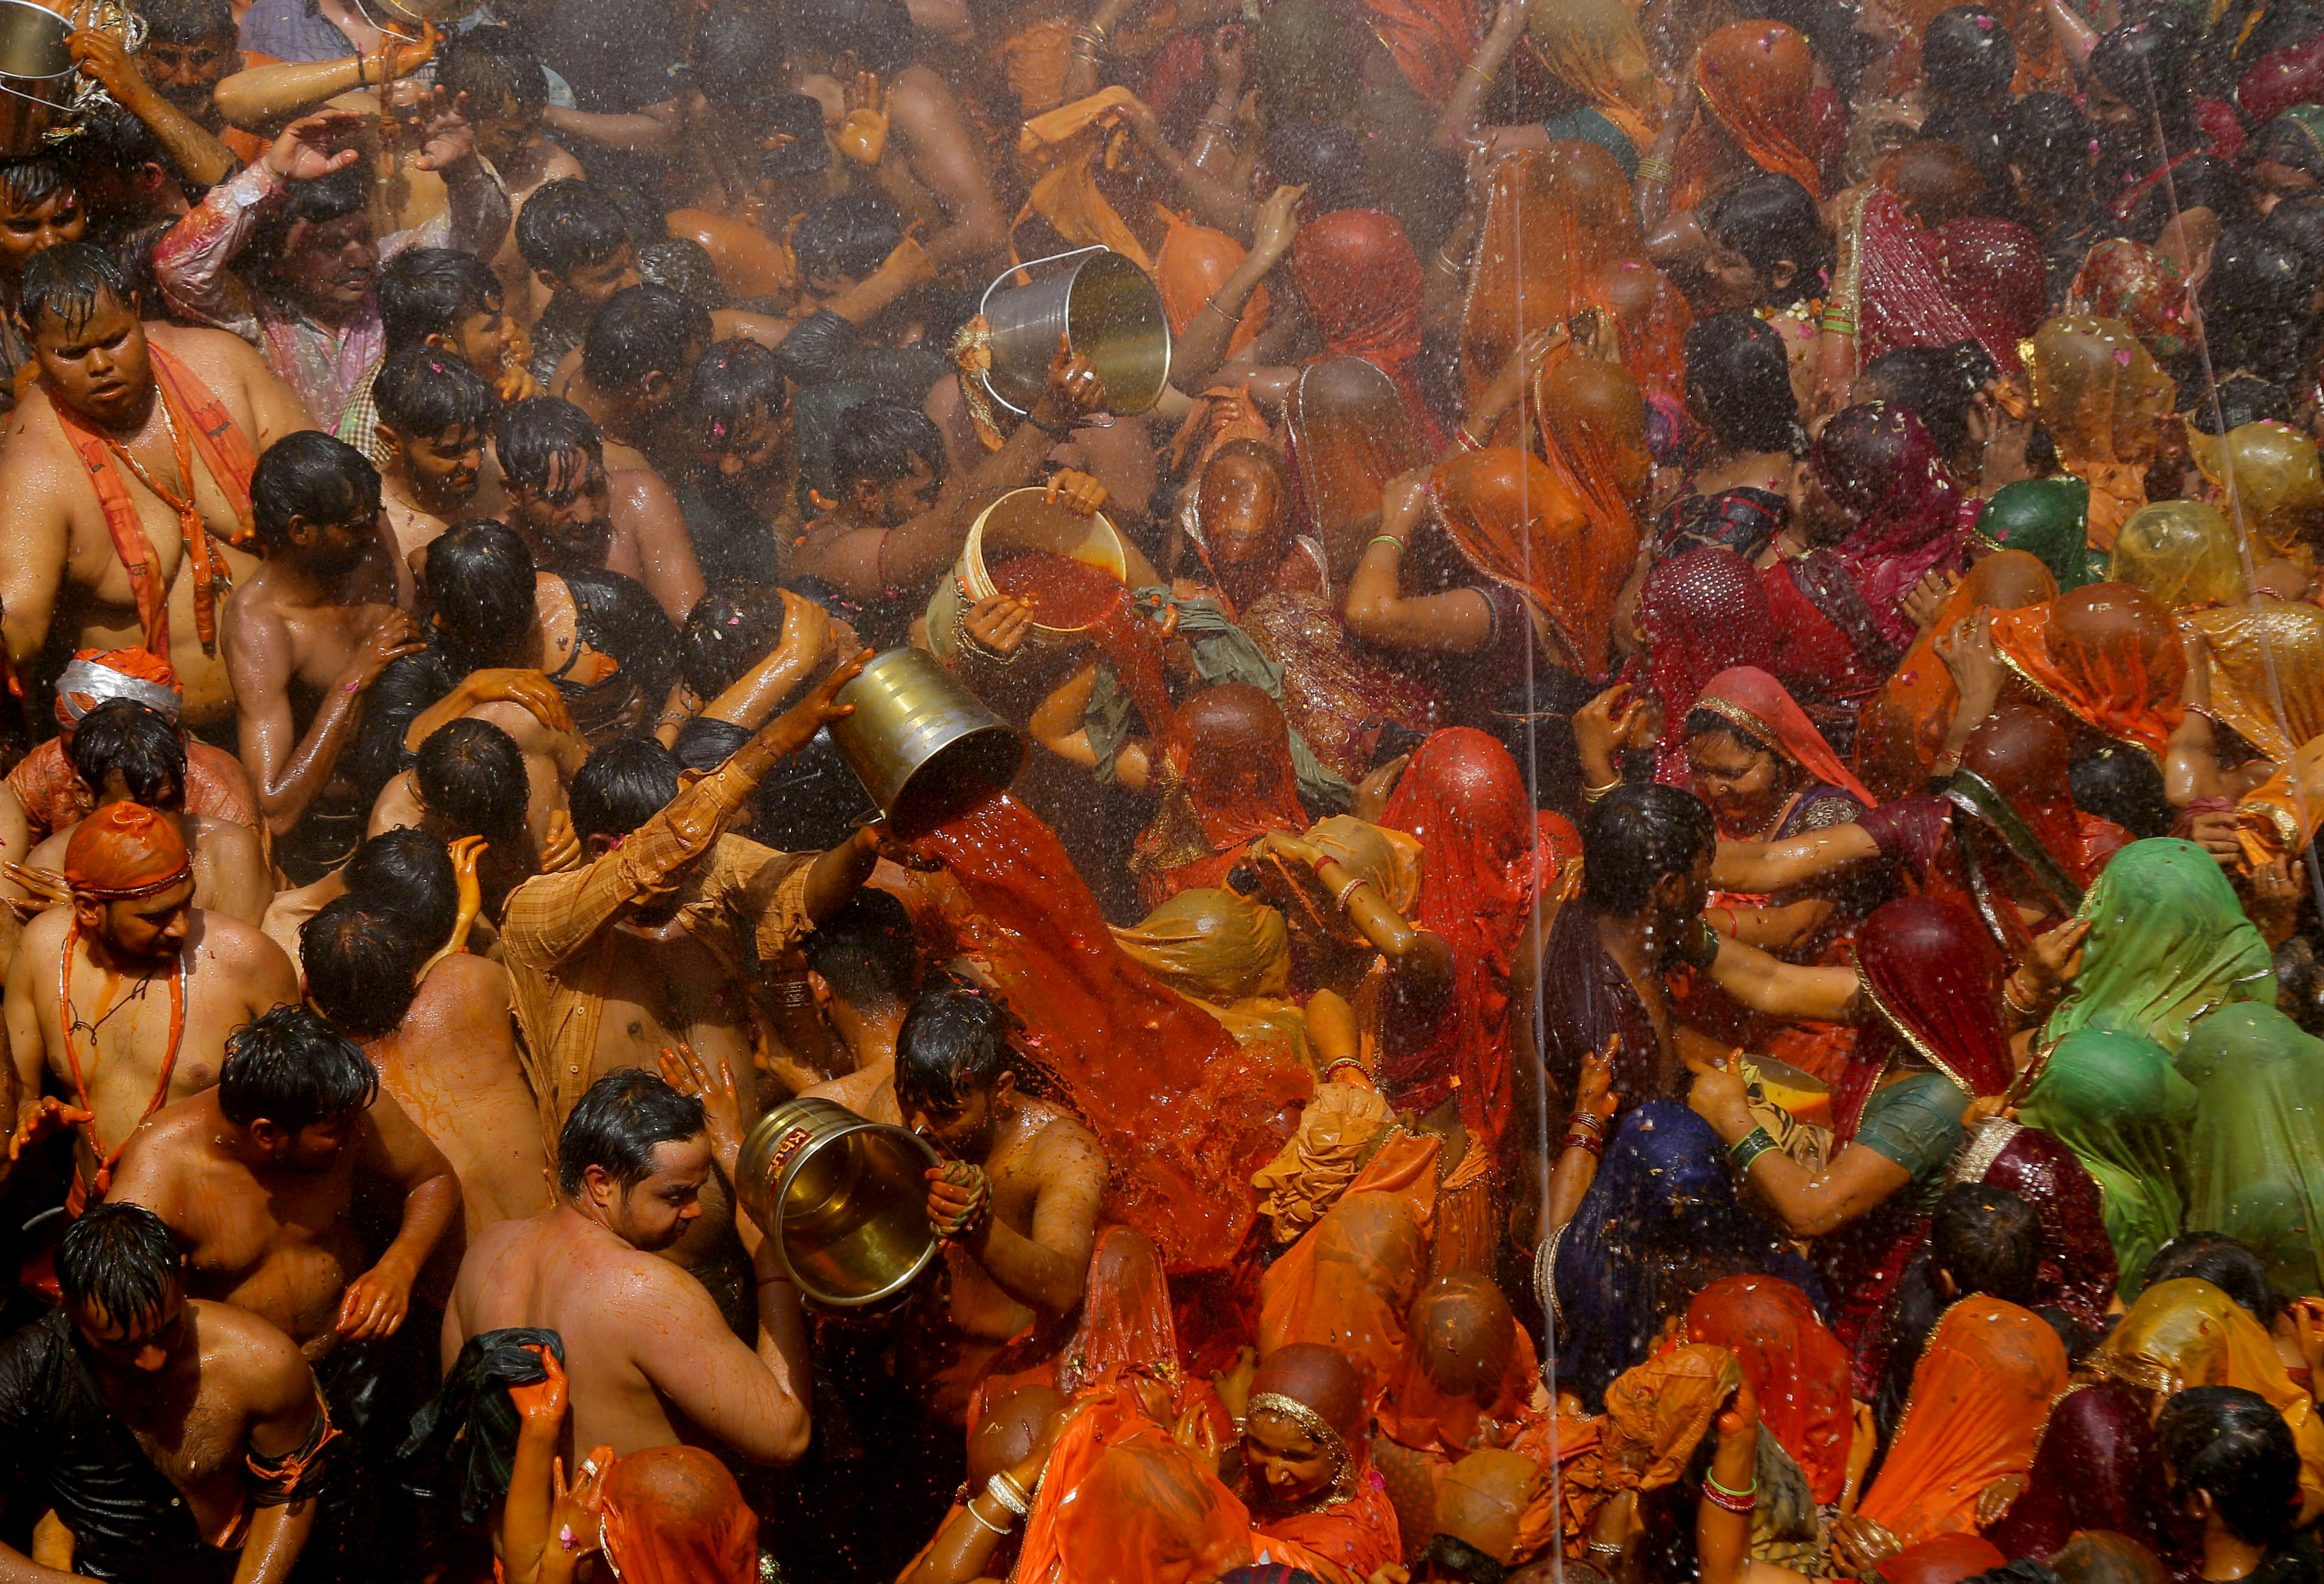 Hindu devotees take part in 'Huranga' at Dauji temple near Mathura